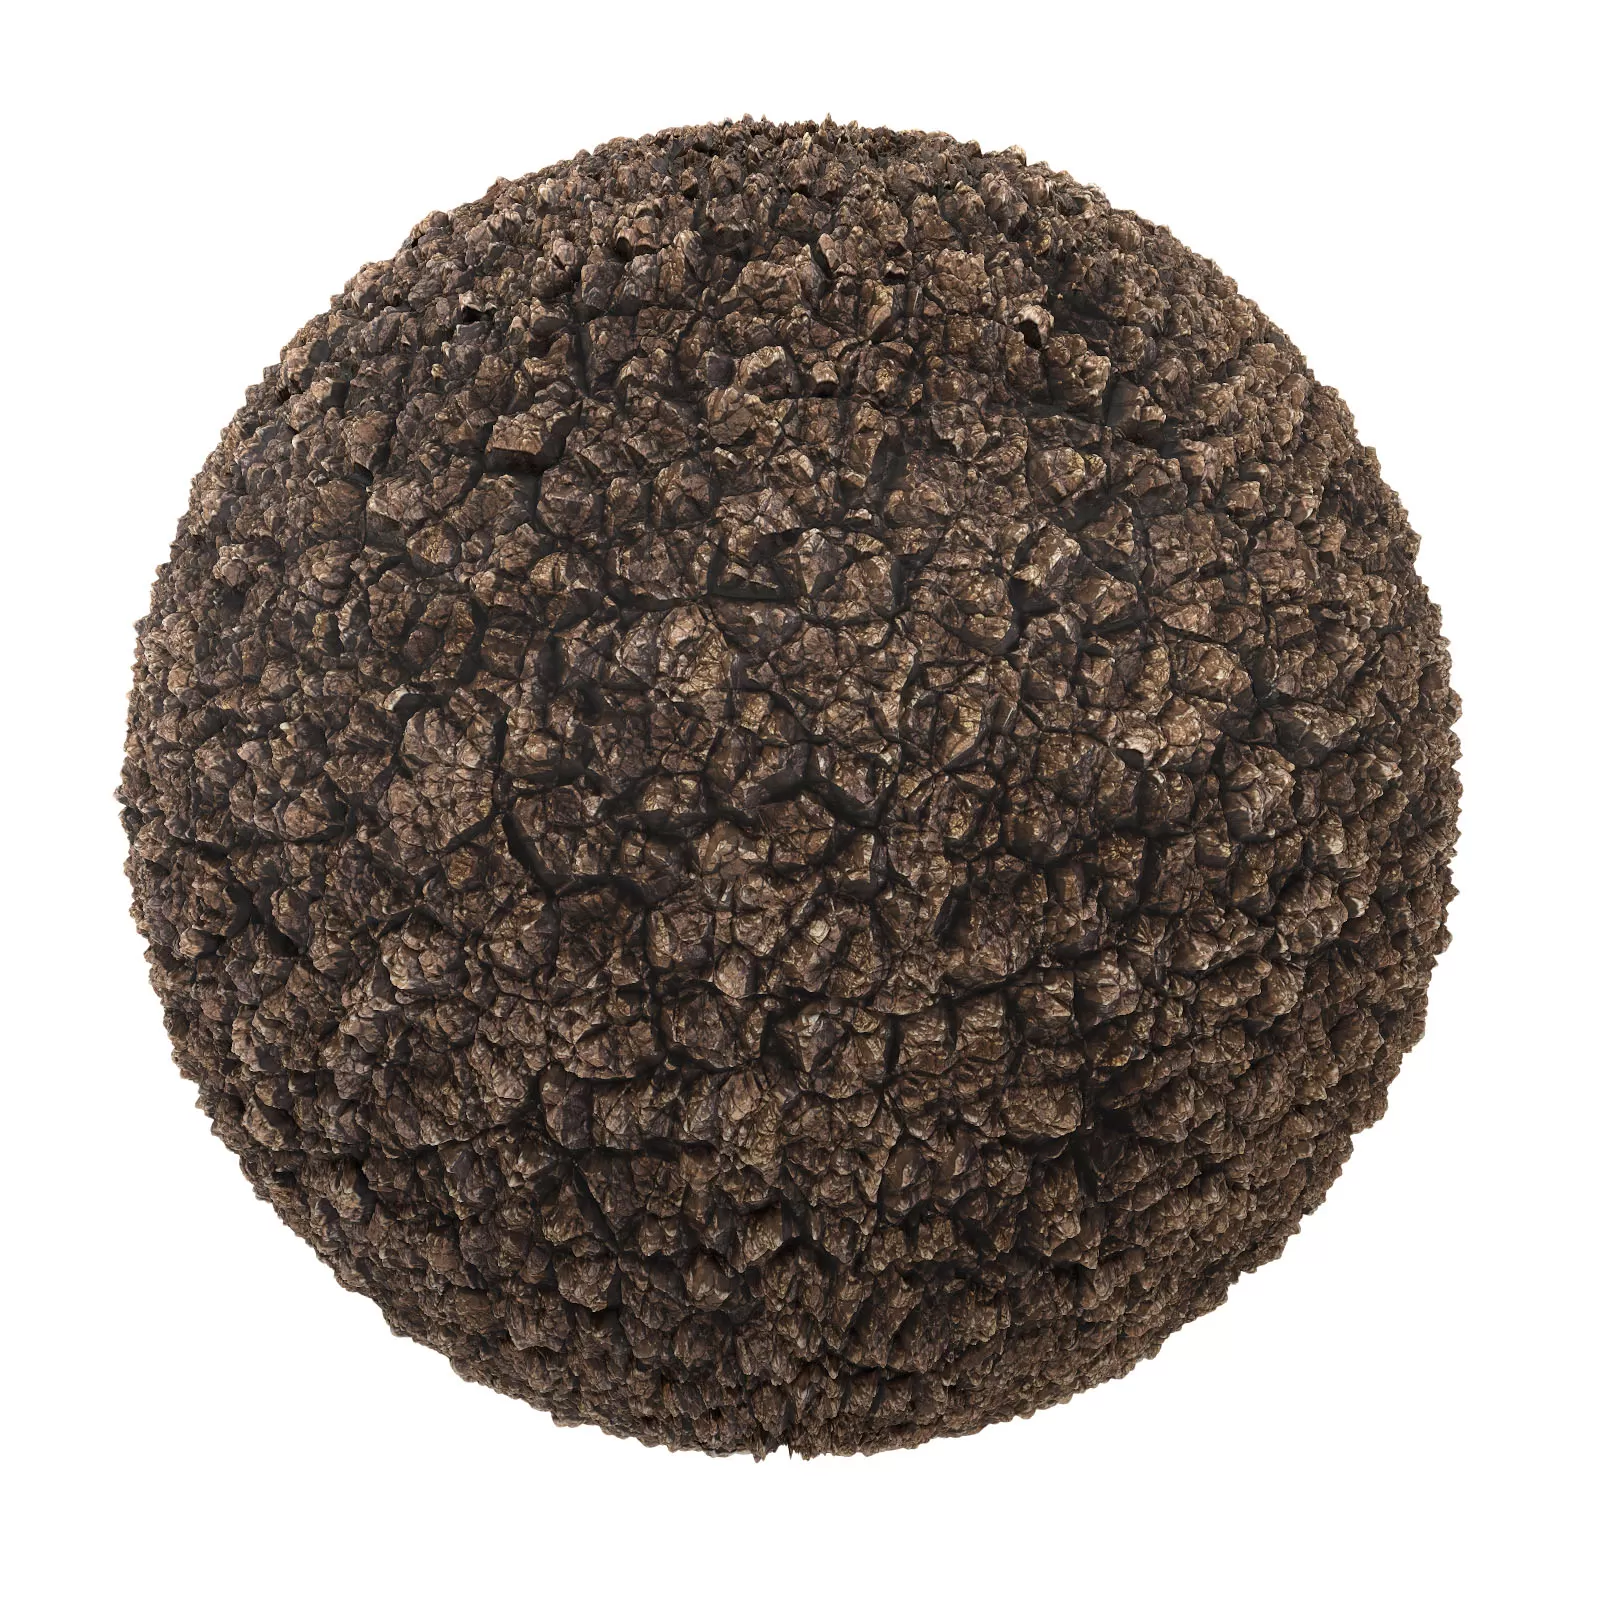 PBR CGAXIS TEXTURES – SOIL – Rough Brown Dirt